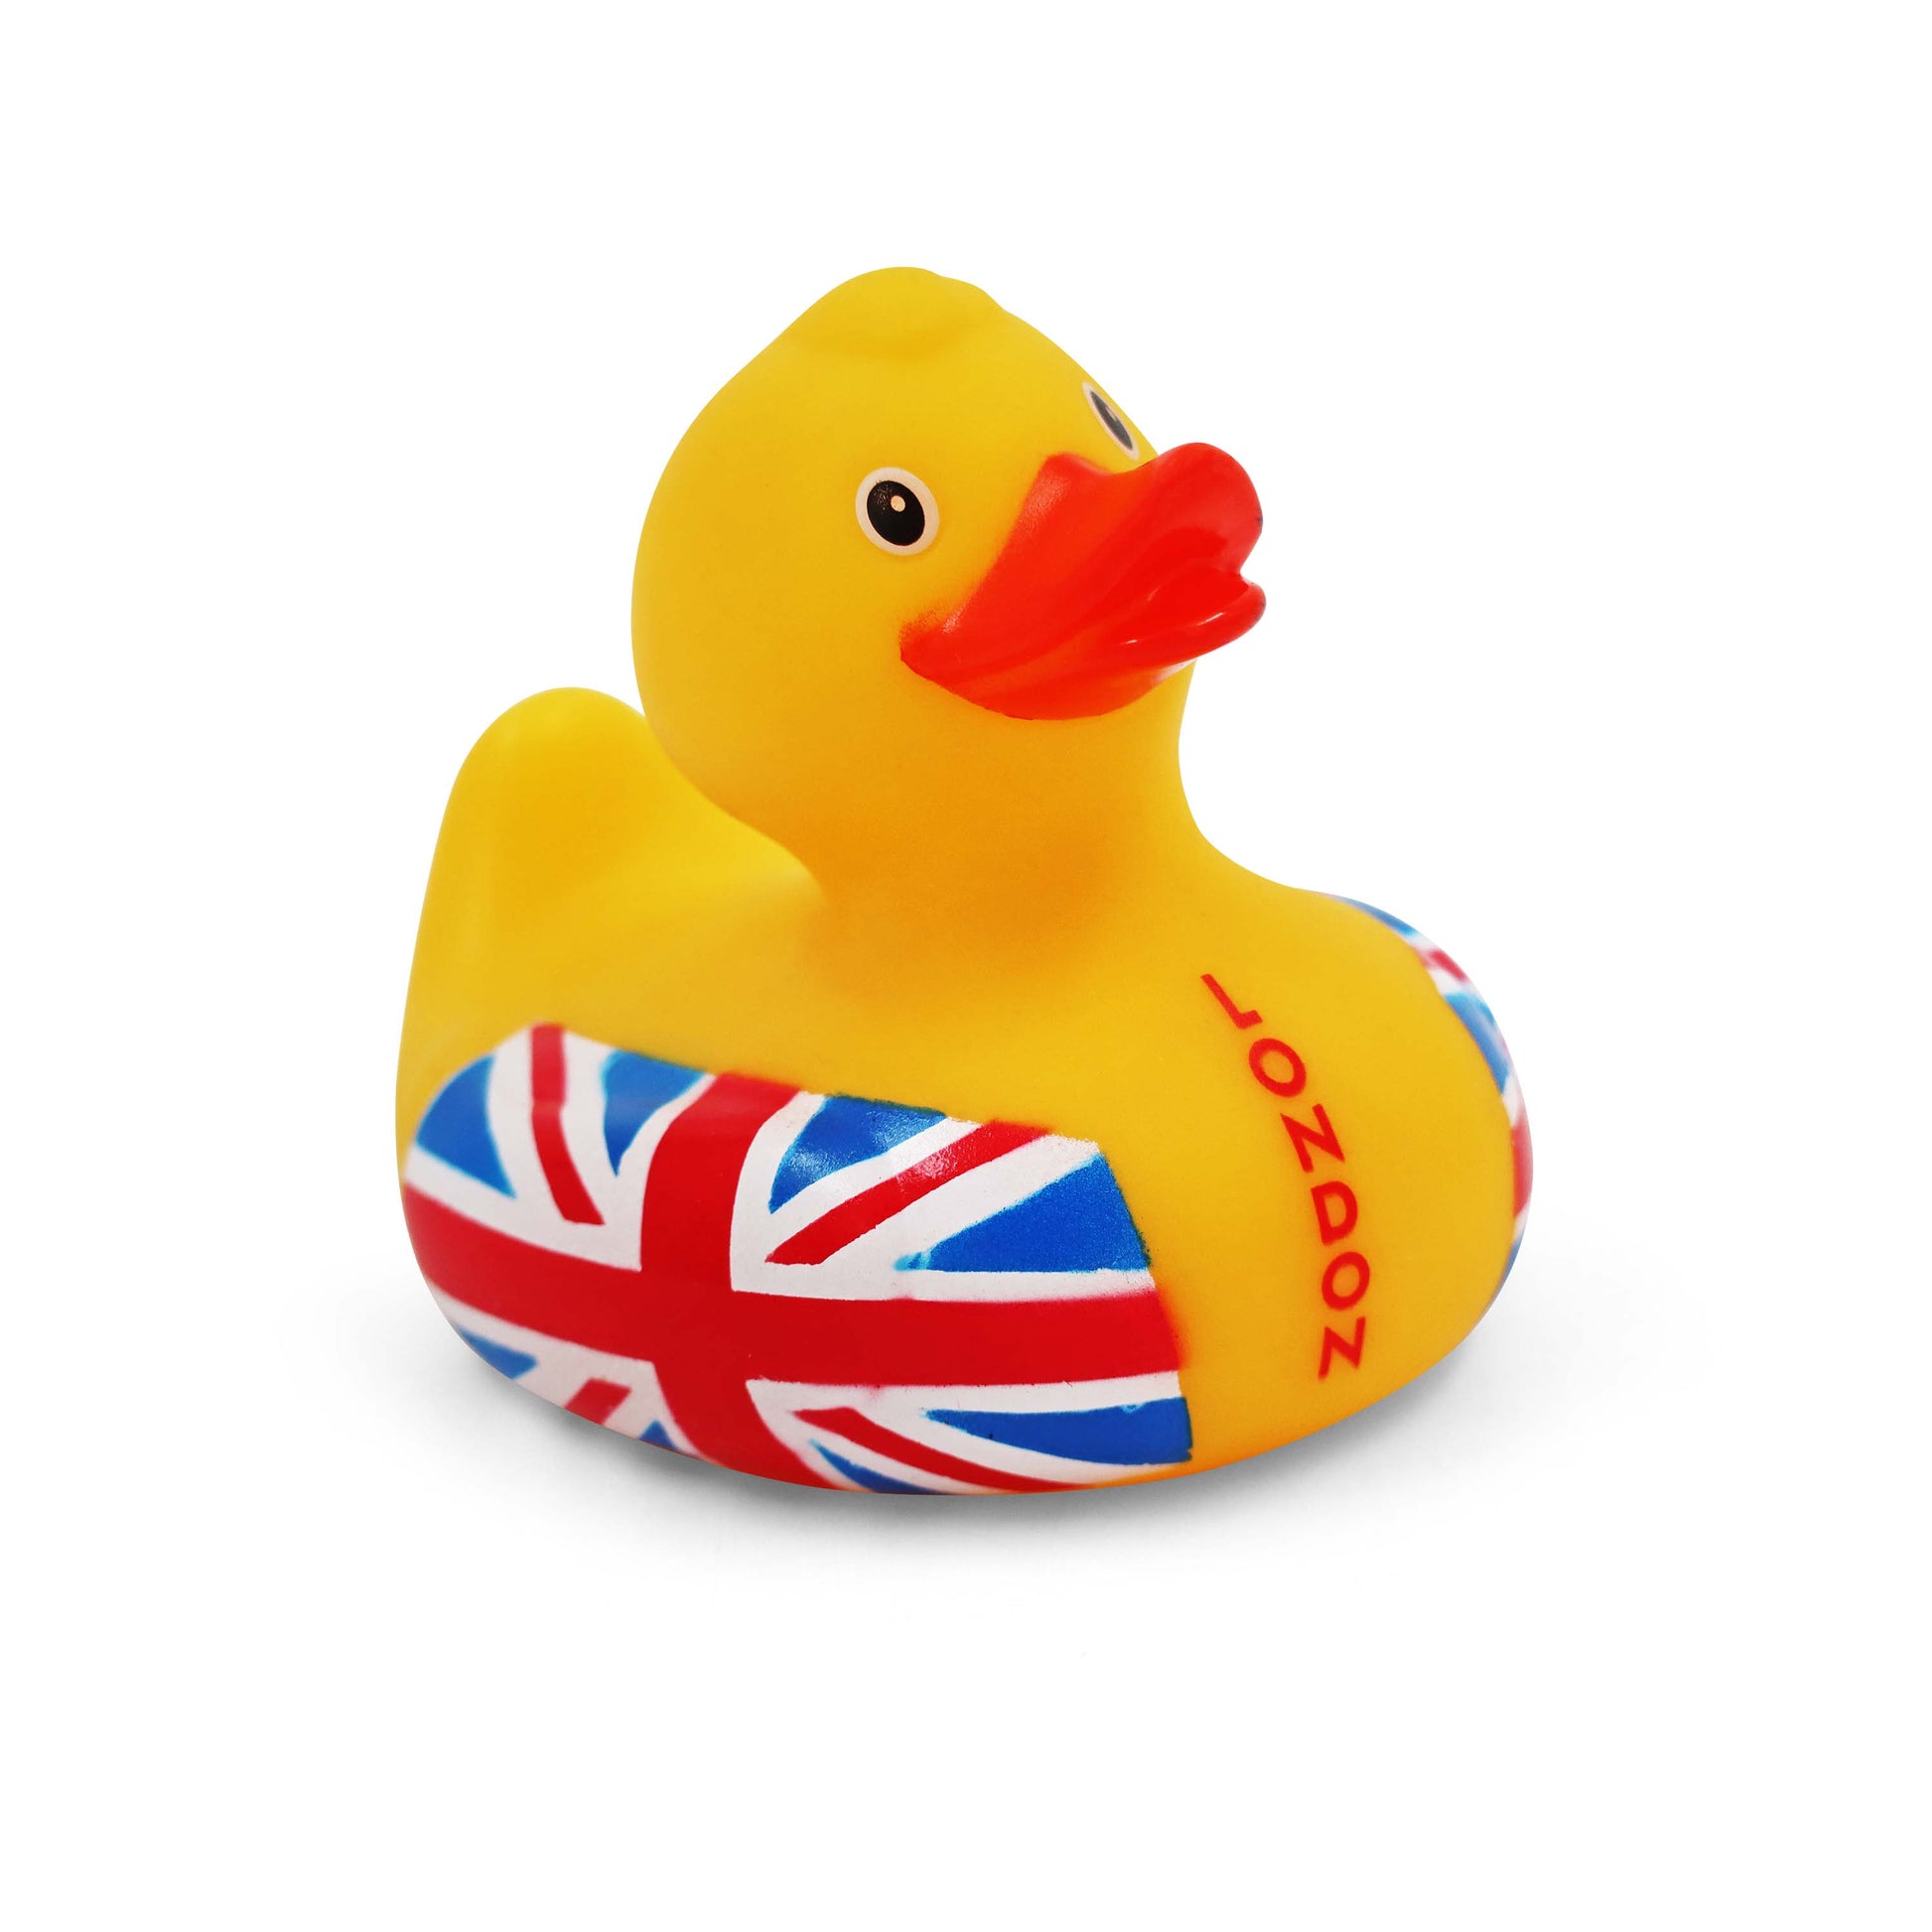 London Union Jack Rubber Duck - London Souvenir Ducks